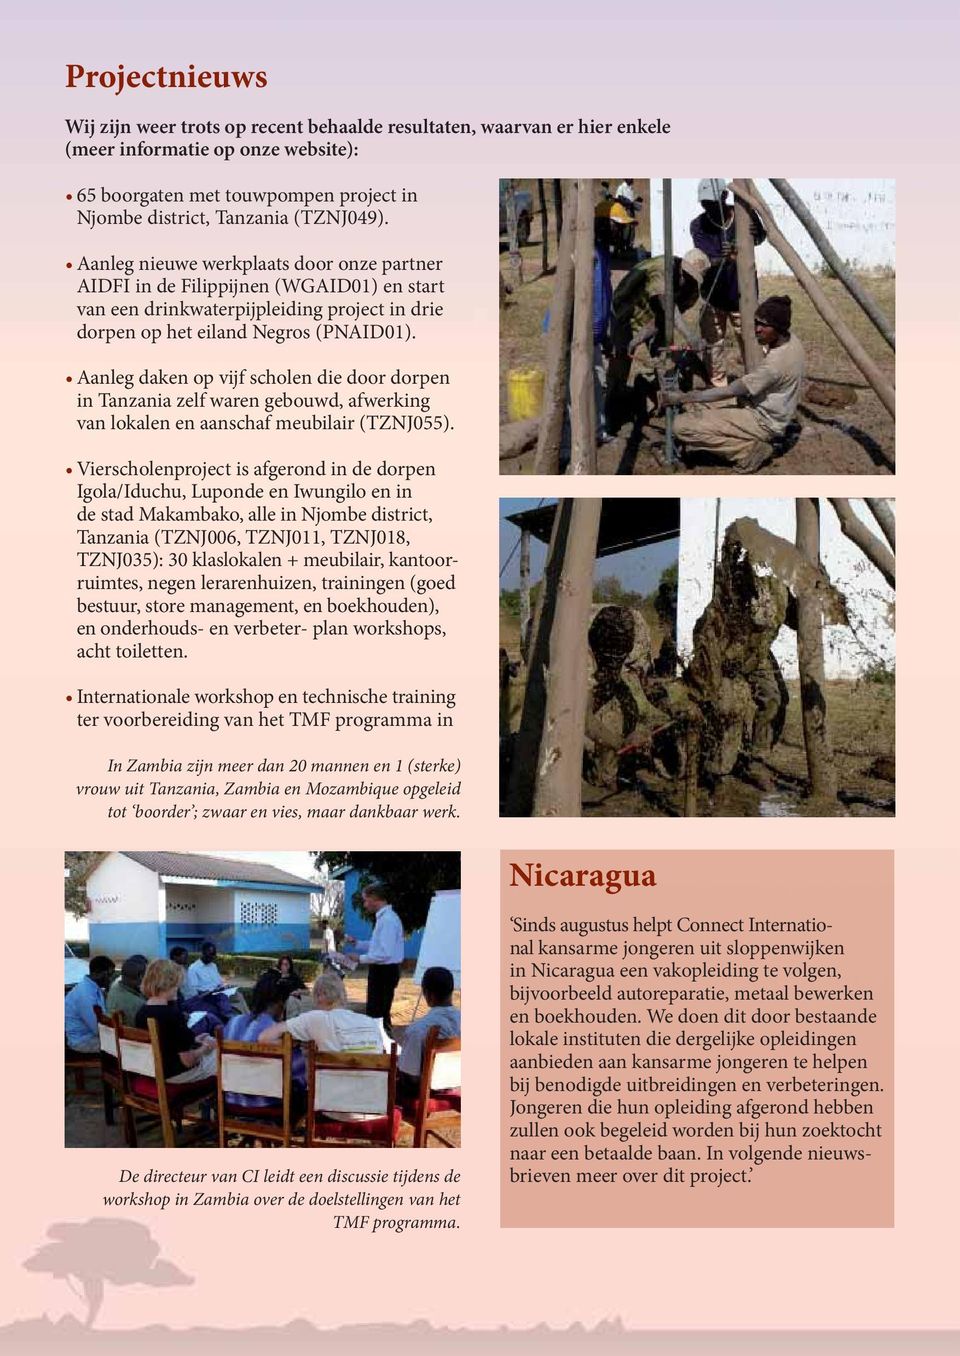 Aanleg daken op vijf scholen die door dorpen in Tanzania zelf waren gebouwd, afwerking van lokalen en aanschaf meubilair (TZNJ055).